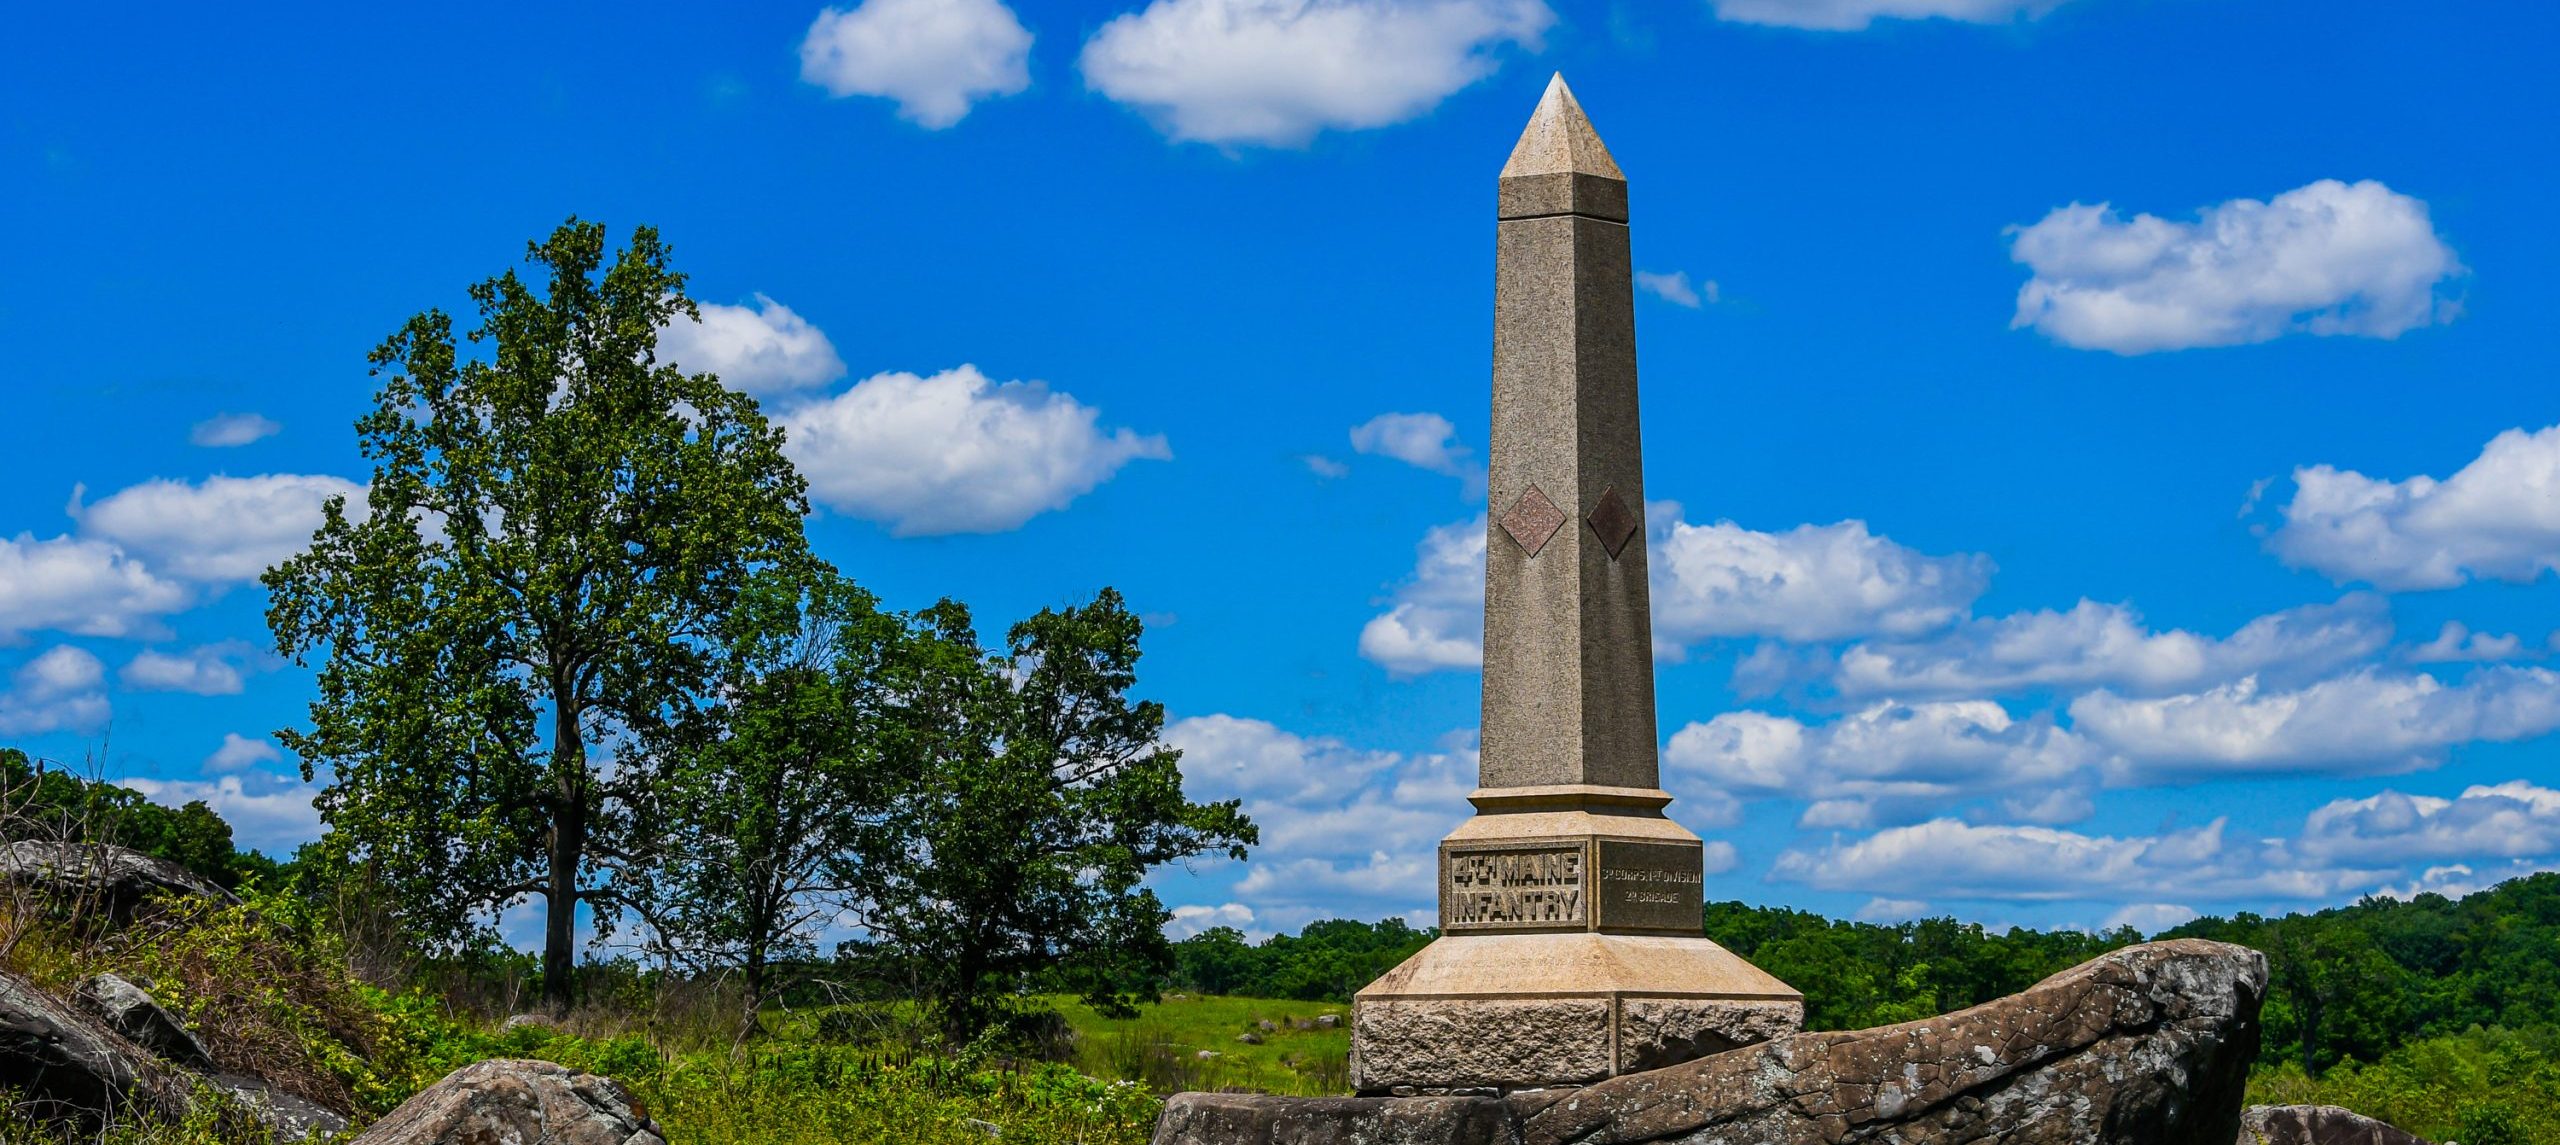 Top 5 Things to Do in Gettysburg